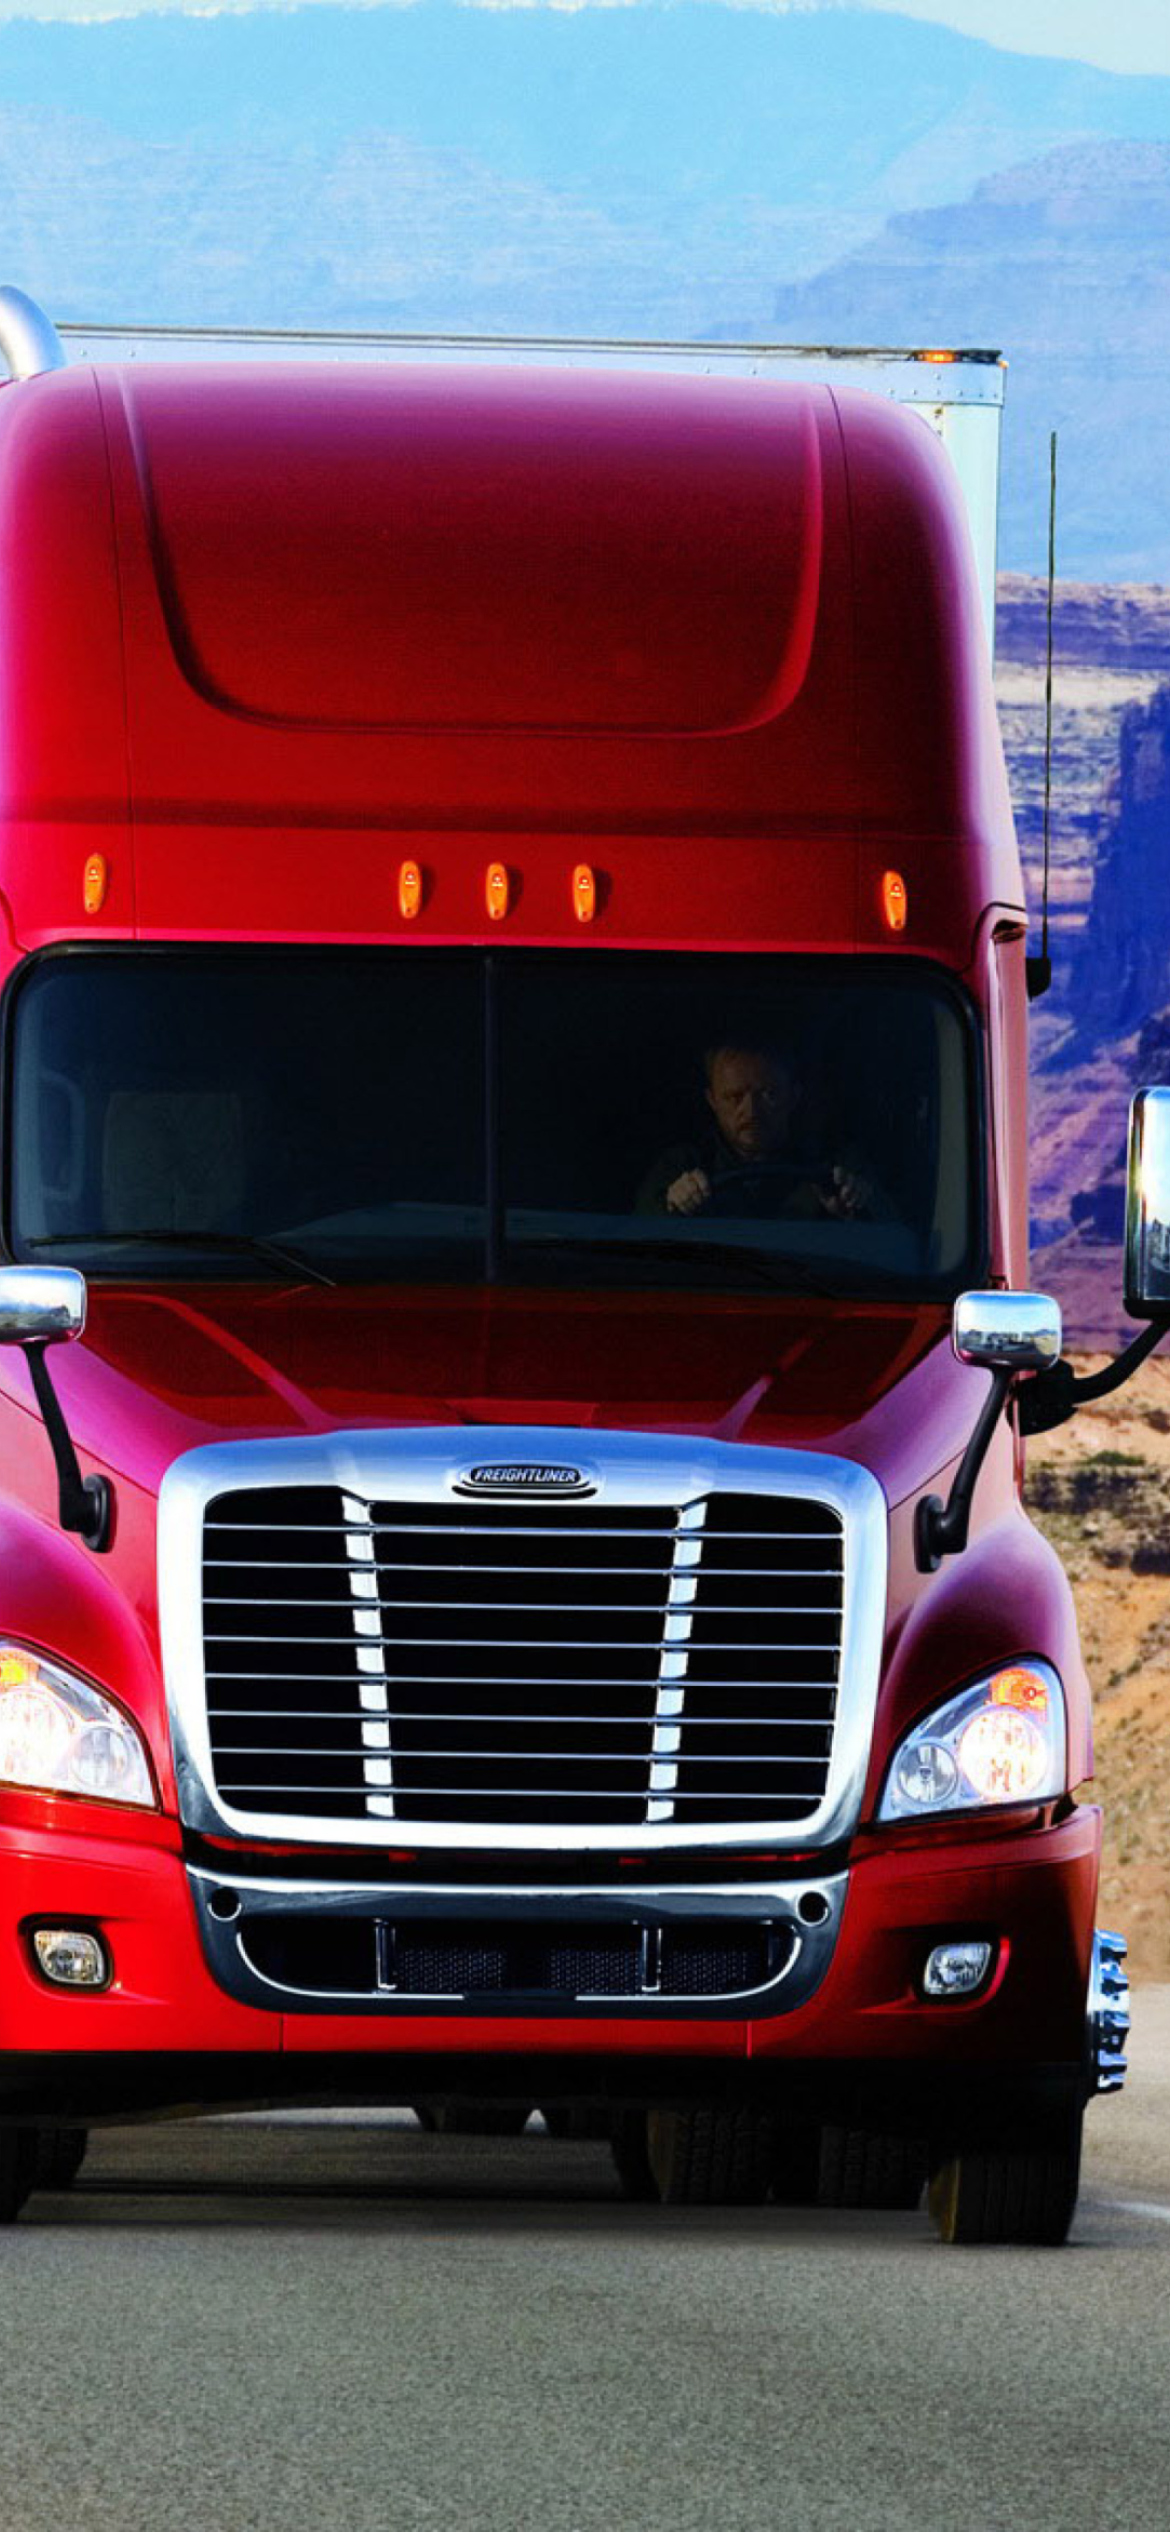 Das Truck Freightliner Wallpaper 1170x2532